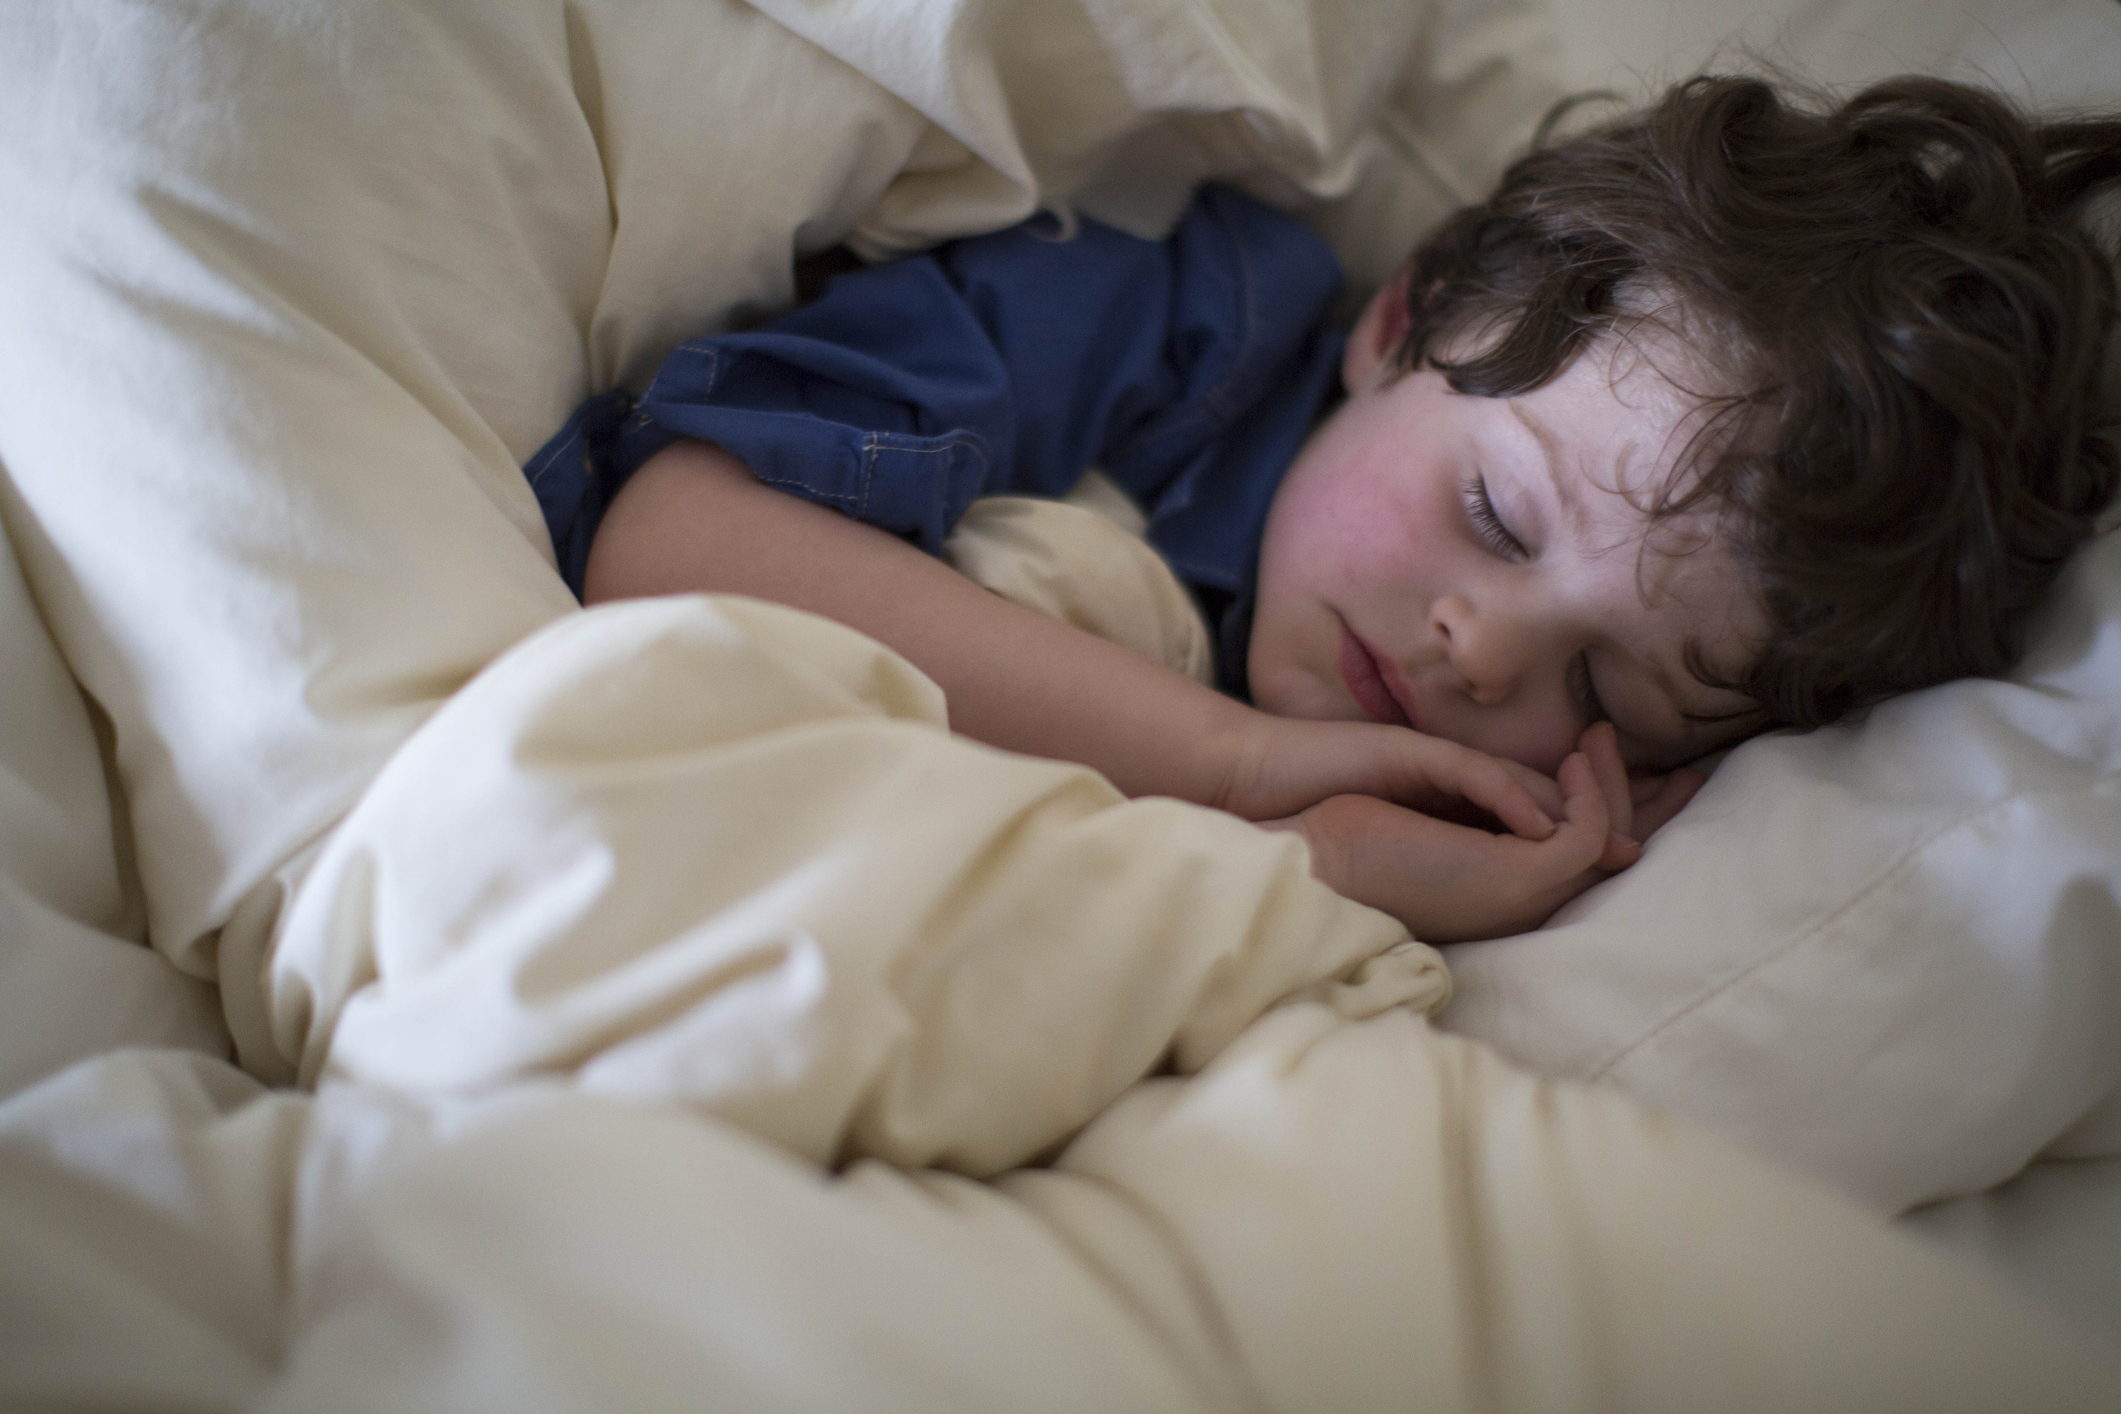 Припадок сна. Ребенок скрежещет во сне. Сон6. Ребёнок засыпает в 6 вечера. Спящие детки фотограф Рейнольдс.